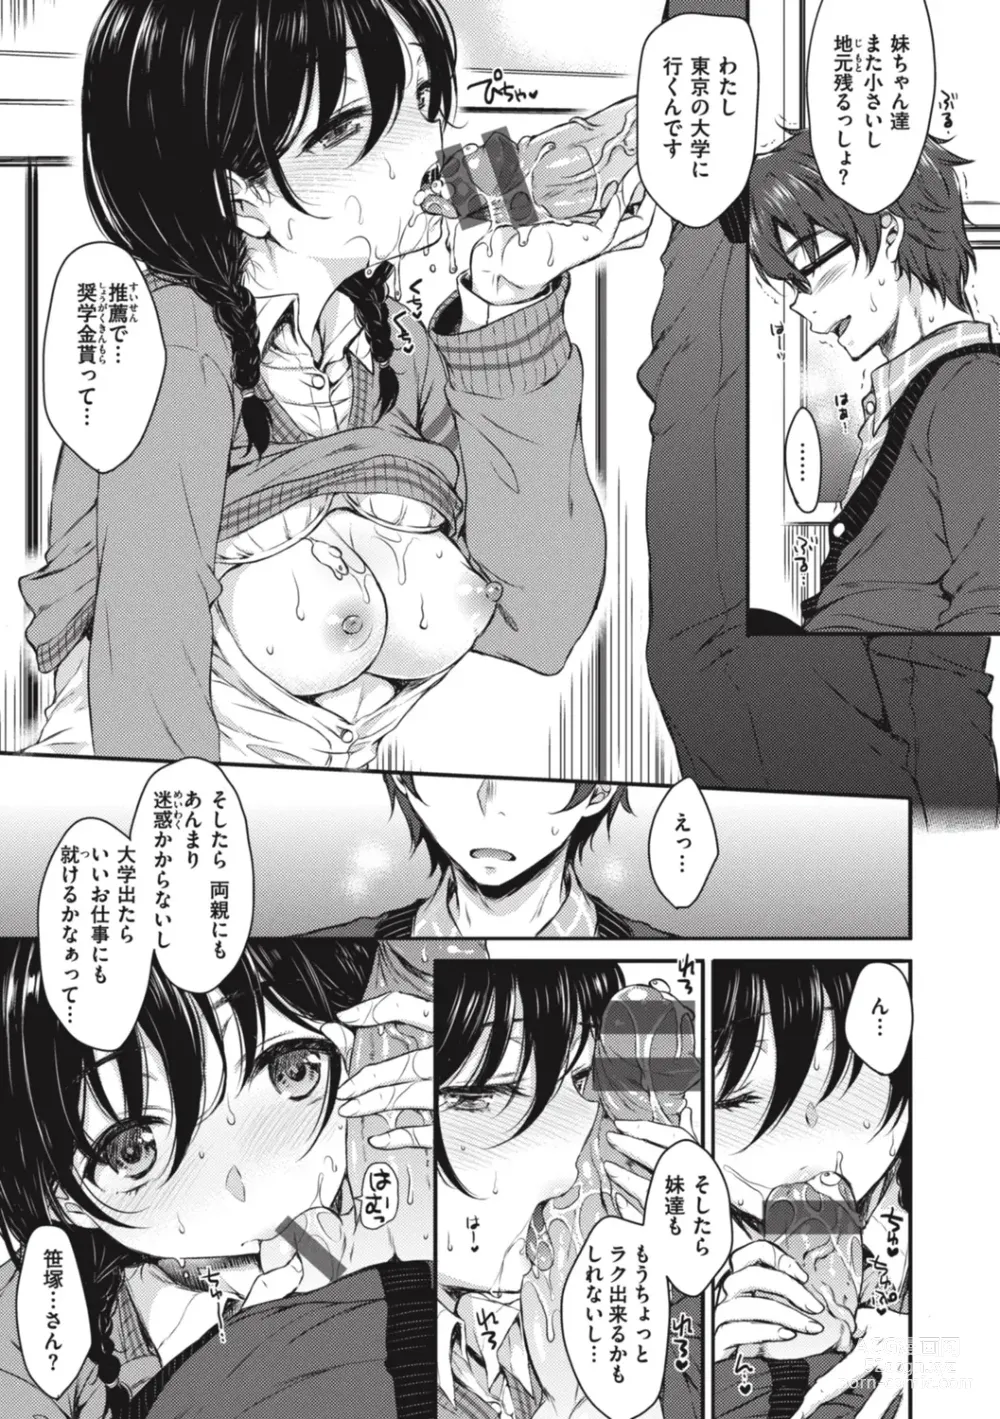 Page 19 of manga Onee-chan mo Watashi mo - Both My Sister and I are...